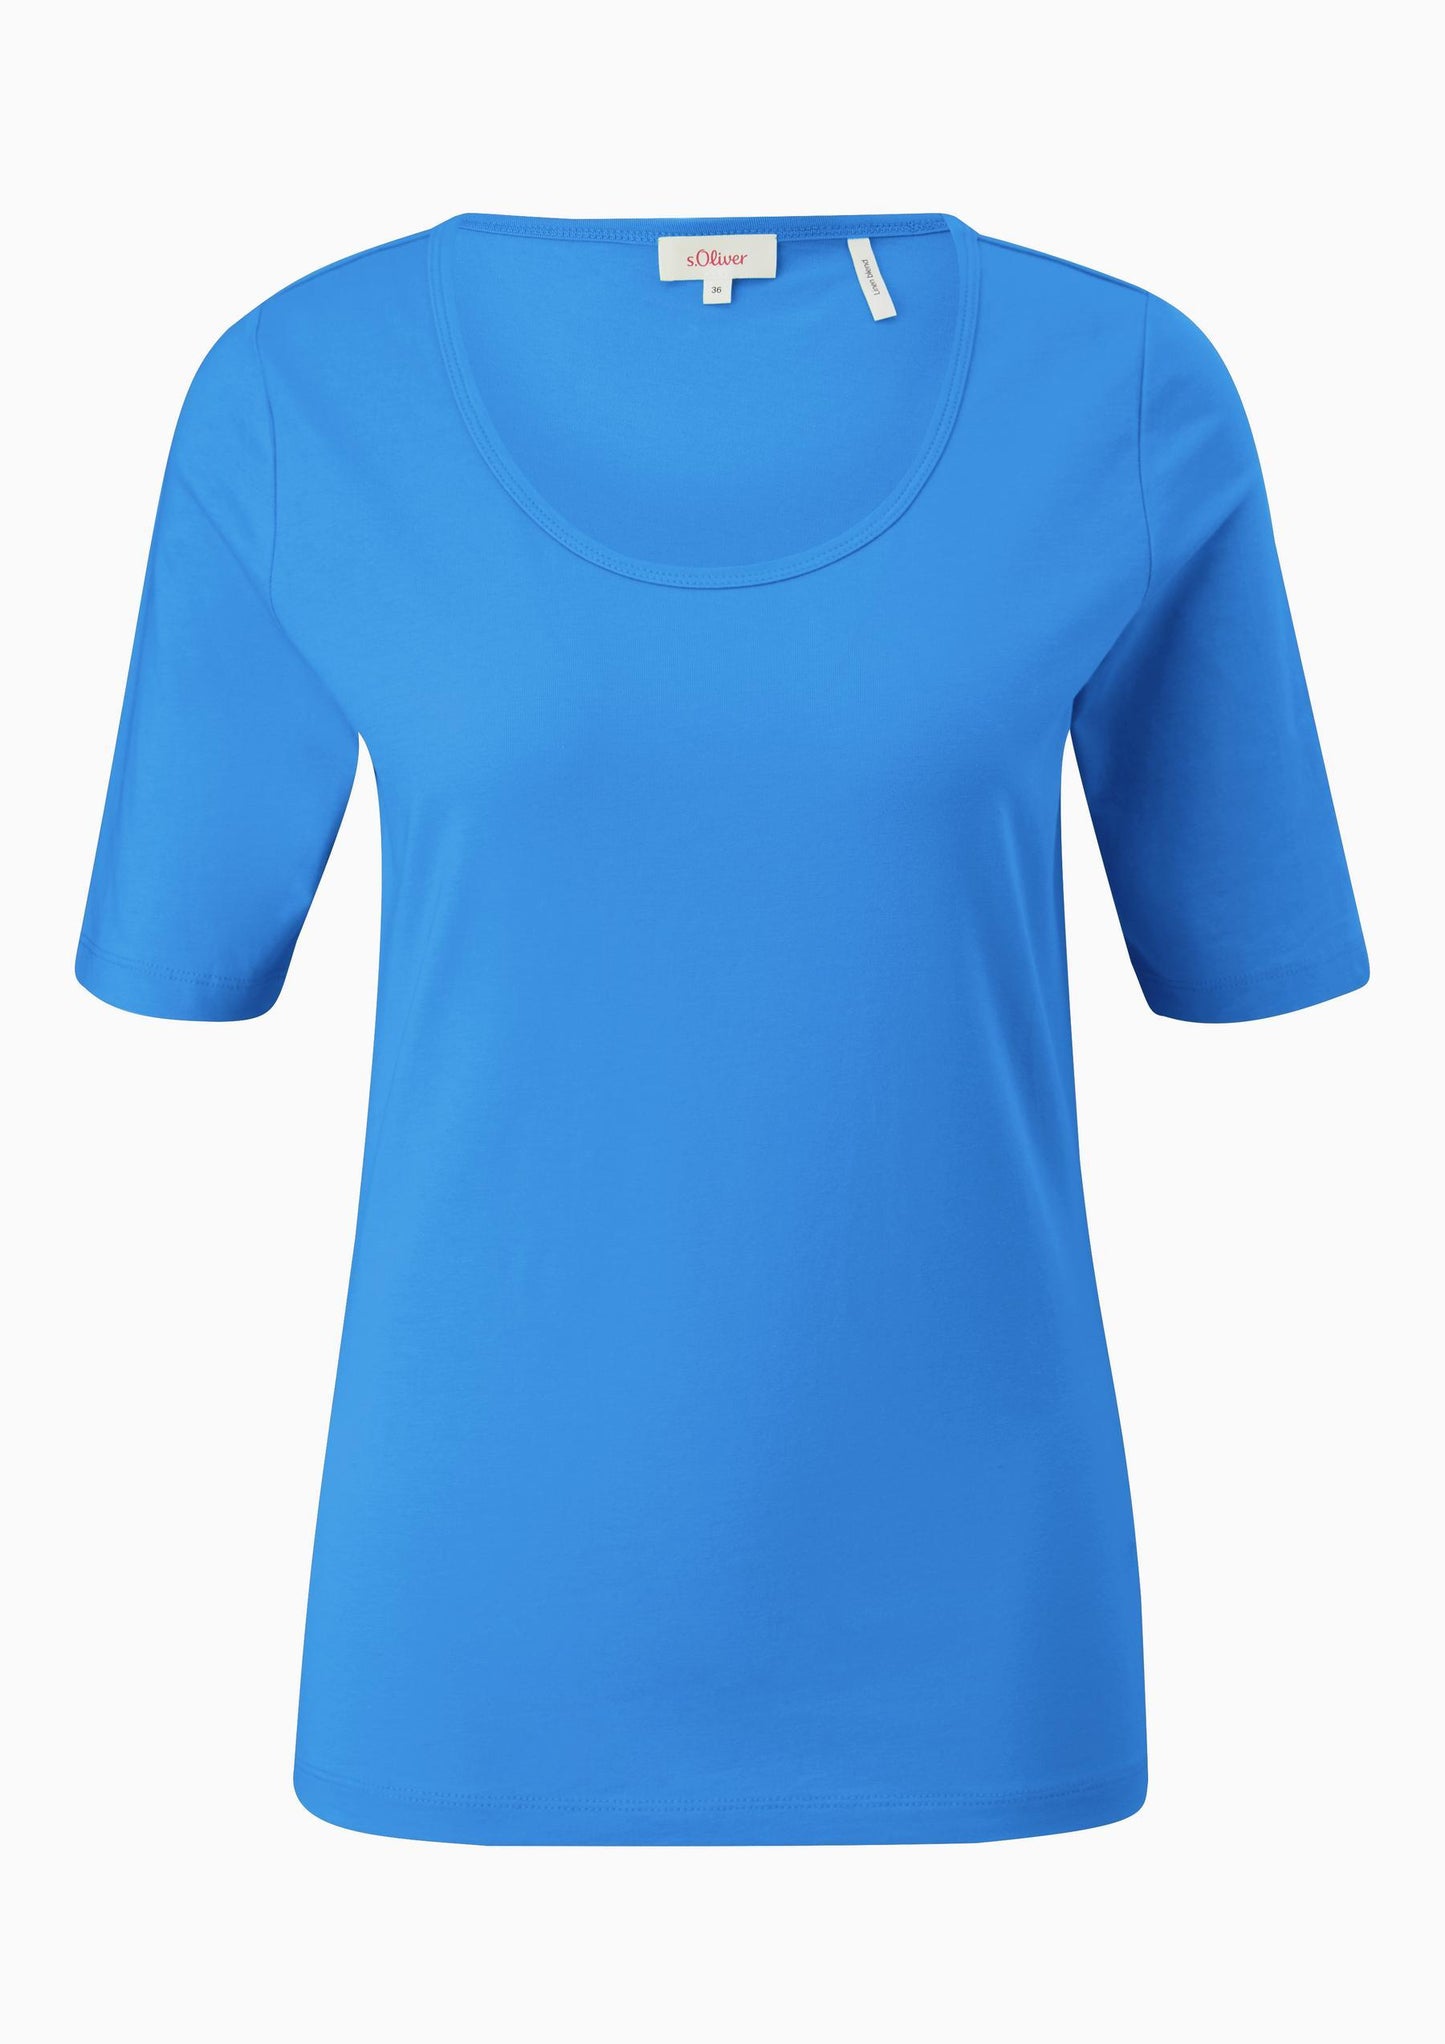 s.Oliver - Jersey-Shirt mit U-Ausschnitt - Farbe: royalblau